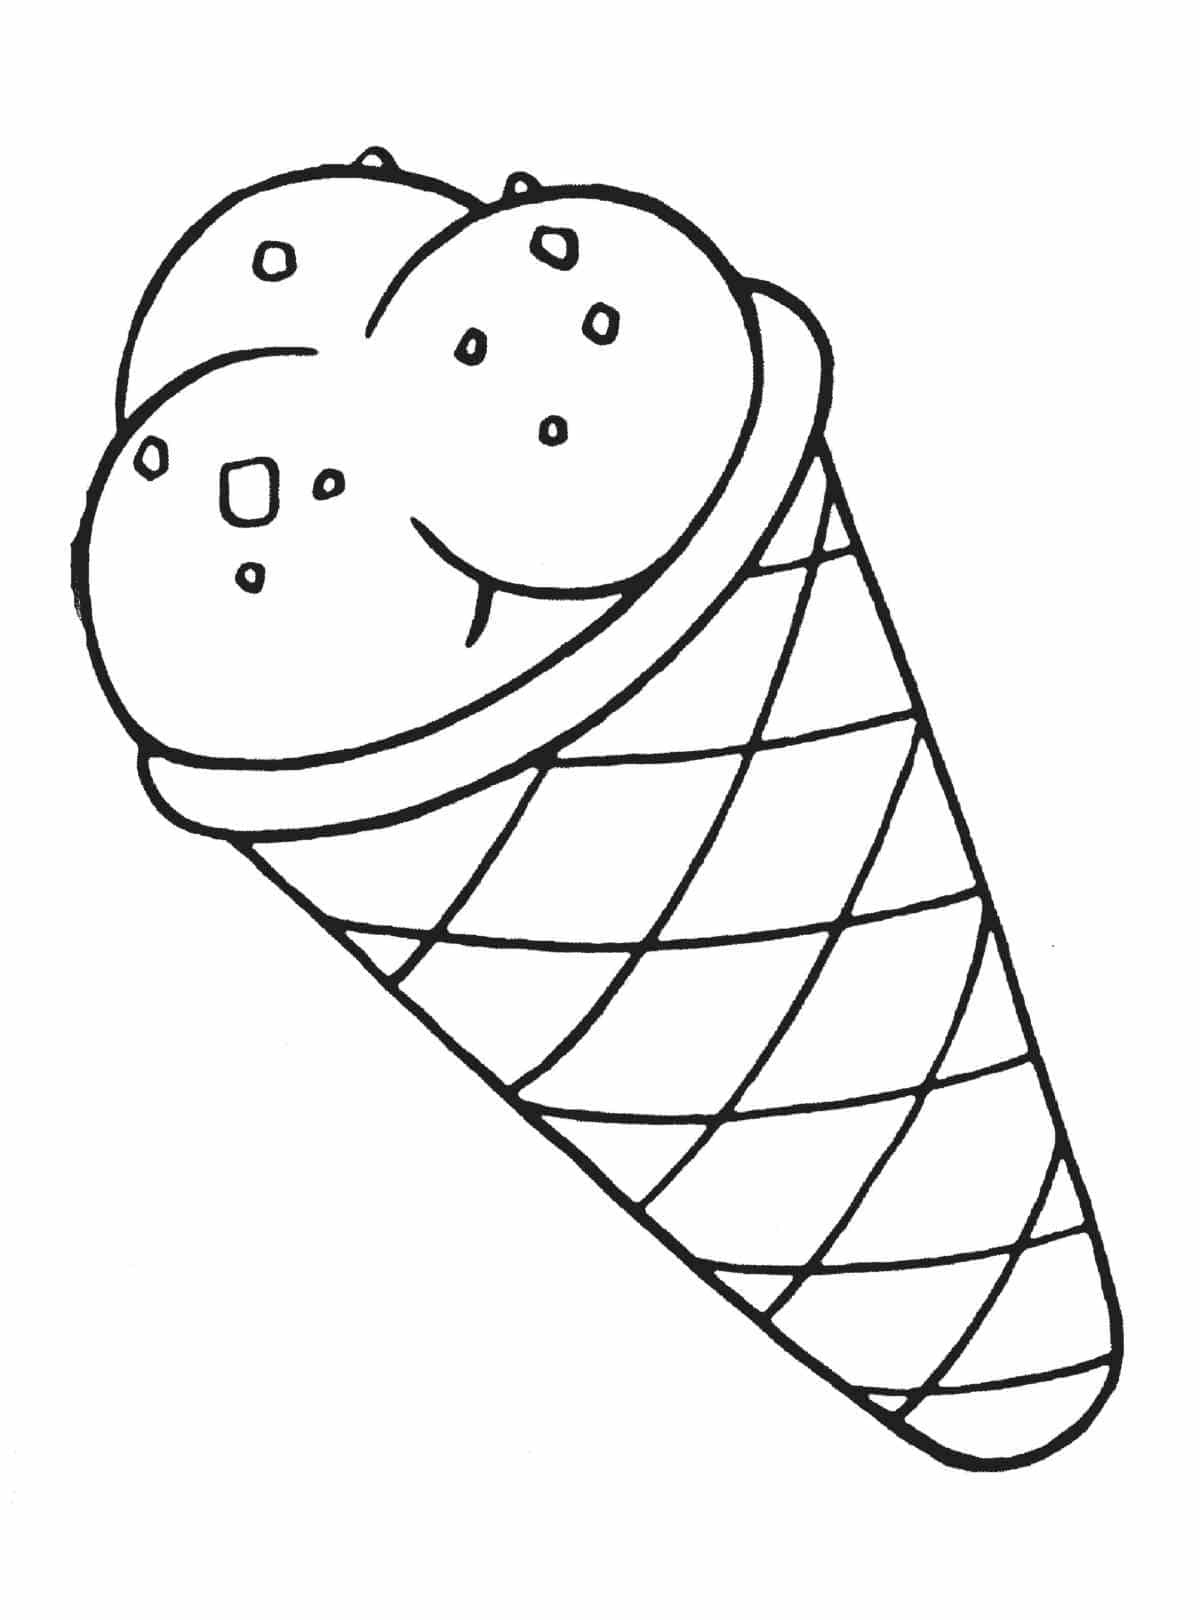 דף צביעה גביע גלידה פשוט לצביעה